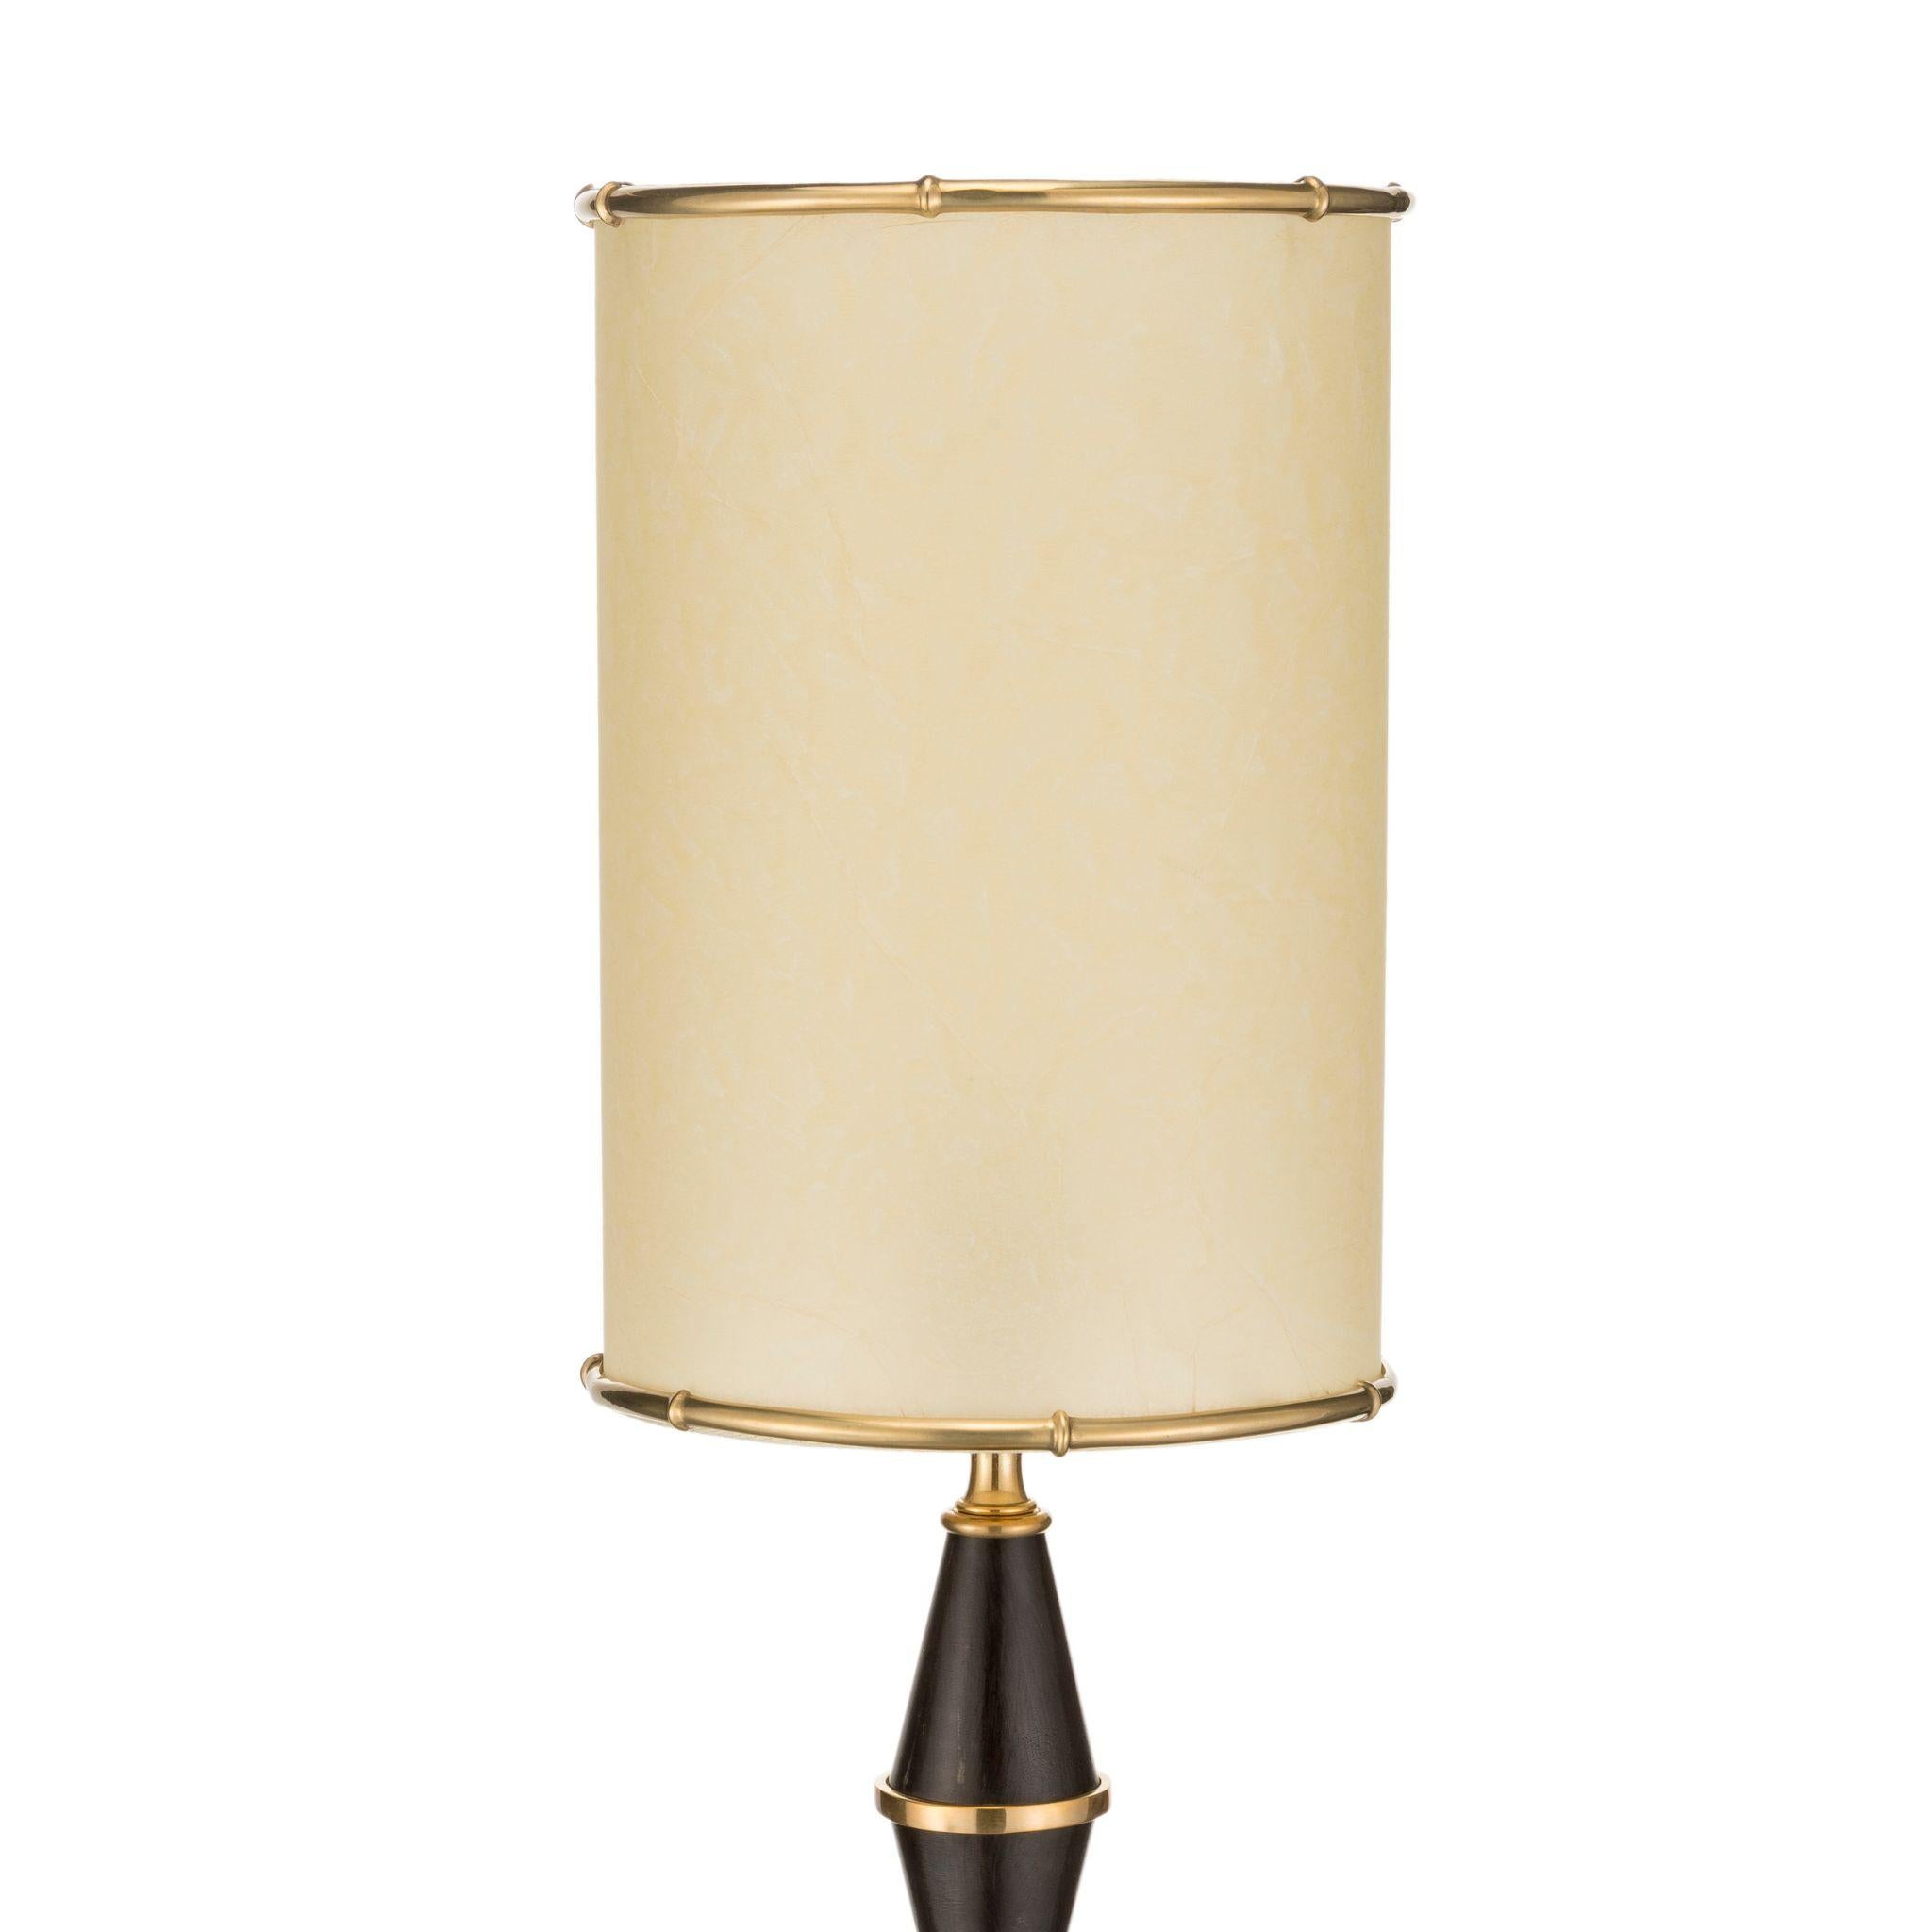 Cette lampe de table particulière appartient à la ligne Urban de la collection Brass Brothers & Co. Sa structure est constituée de petits cônes en laiton ciré noir assemblés l'un dans un sens et l'autre dans l'autre de manière à former un losange.